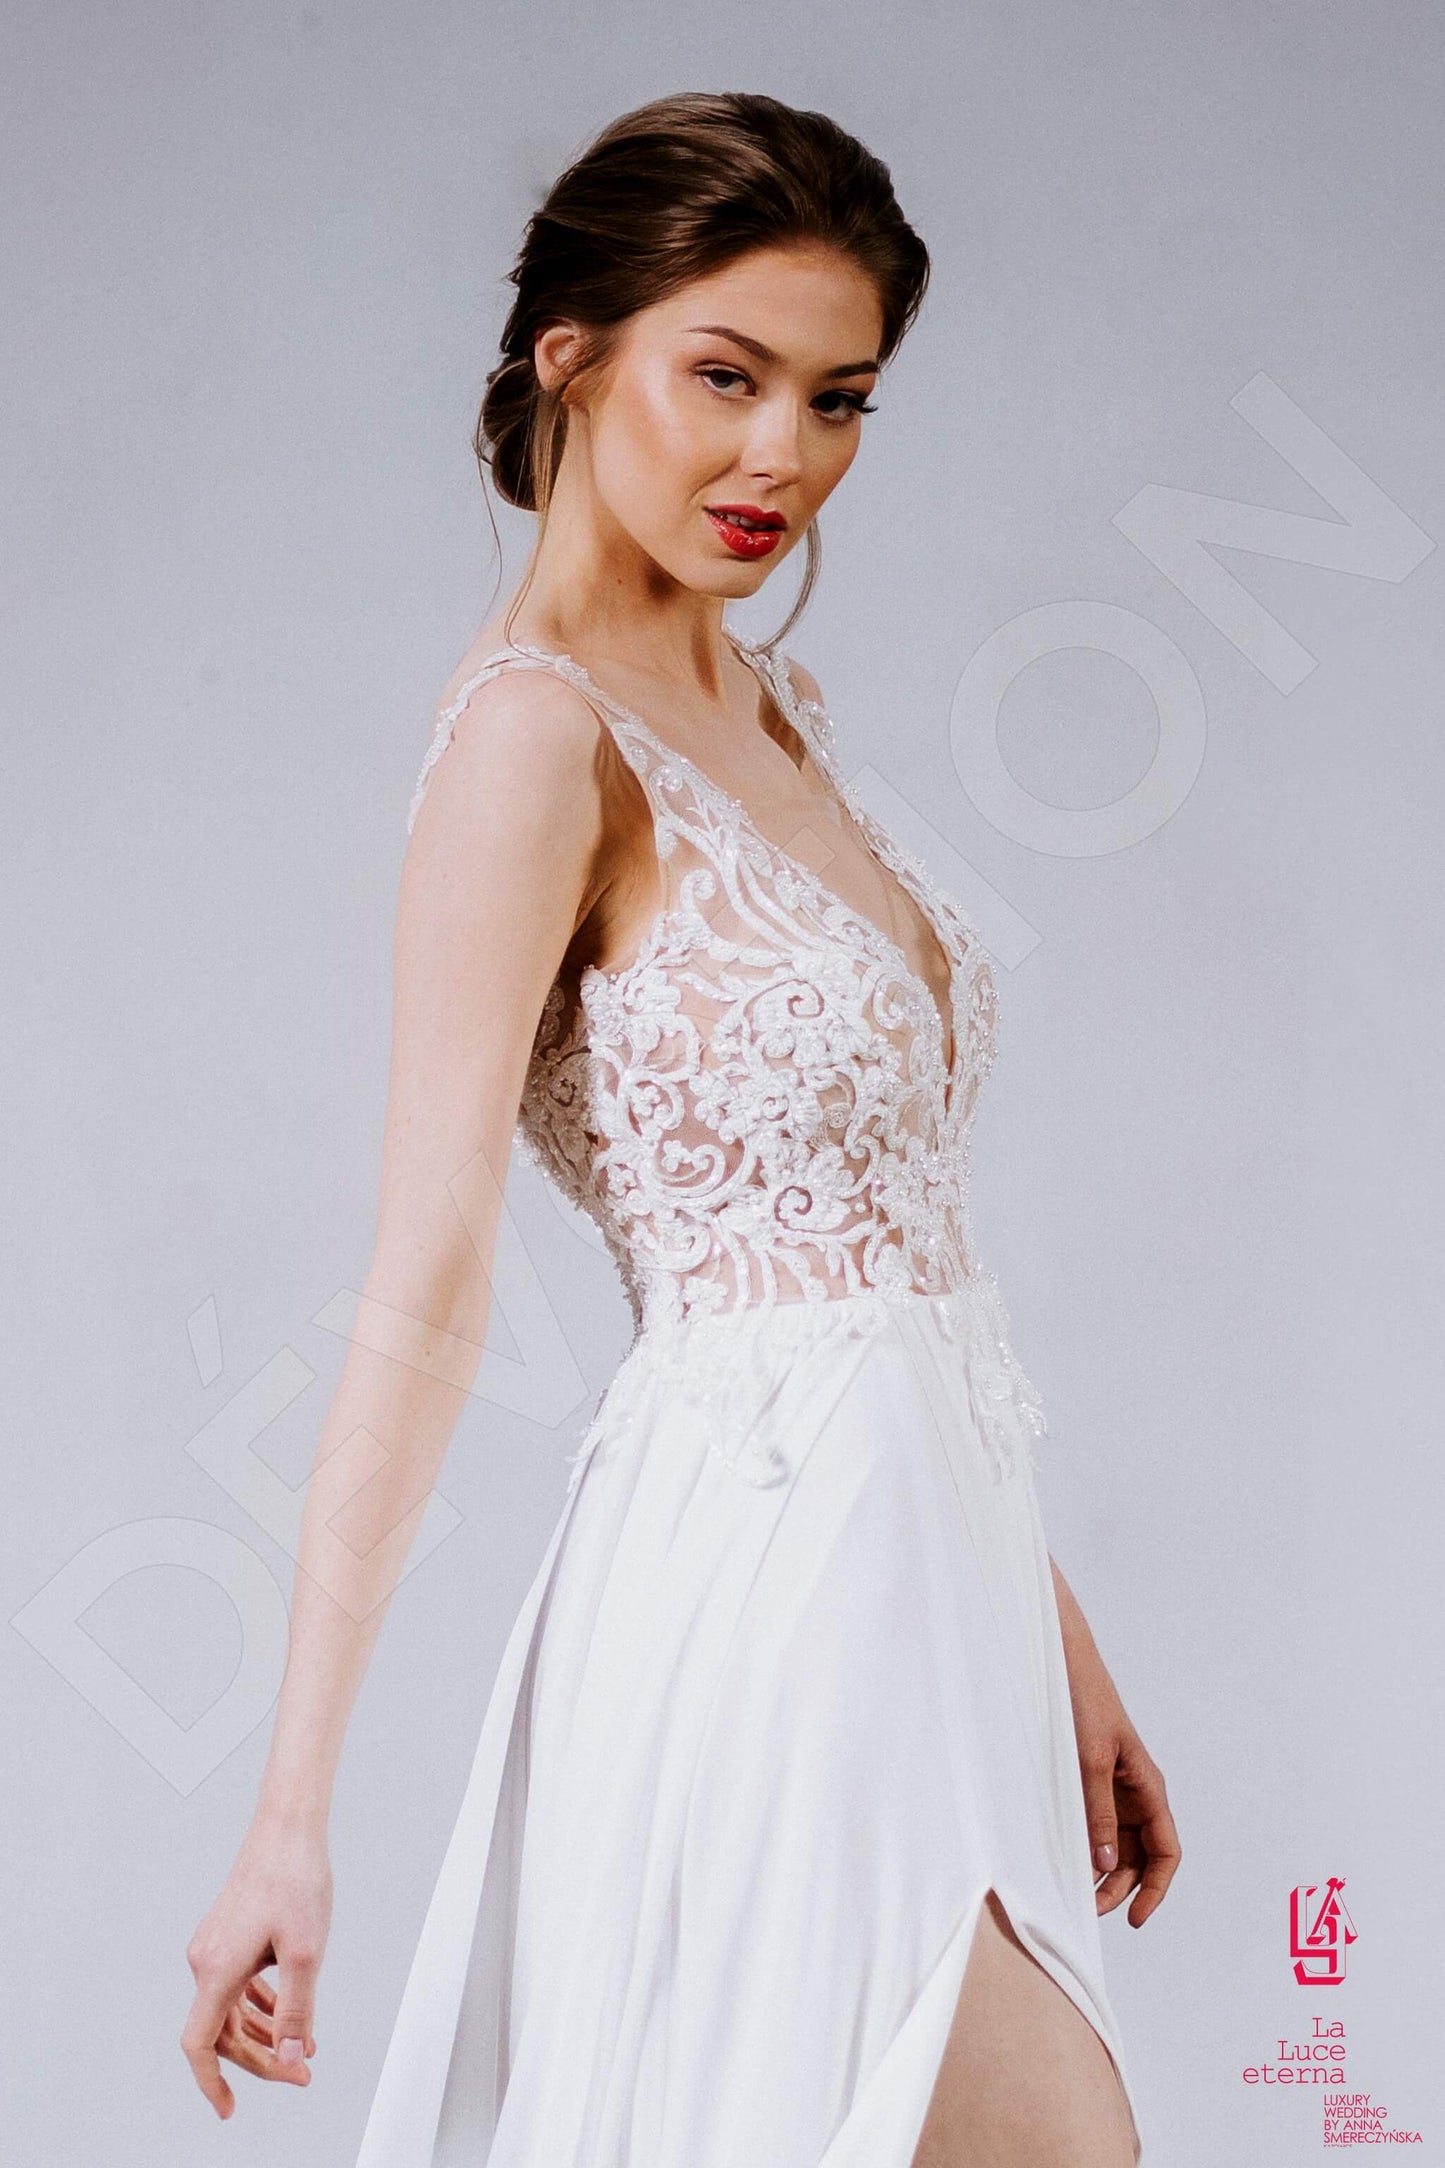 Roise Full back A-line Straps Wedding Dress 2